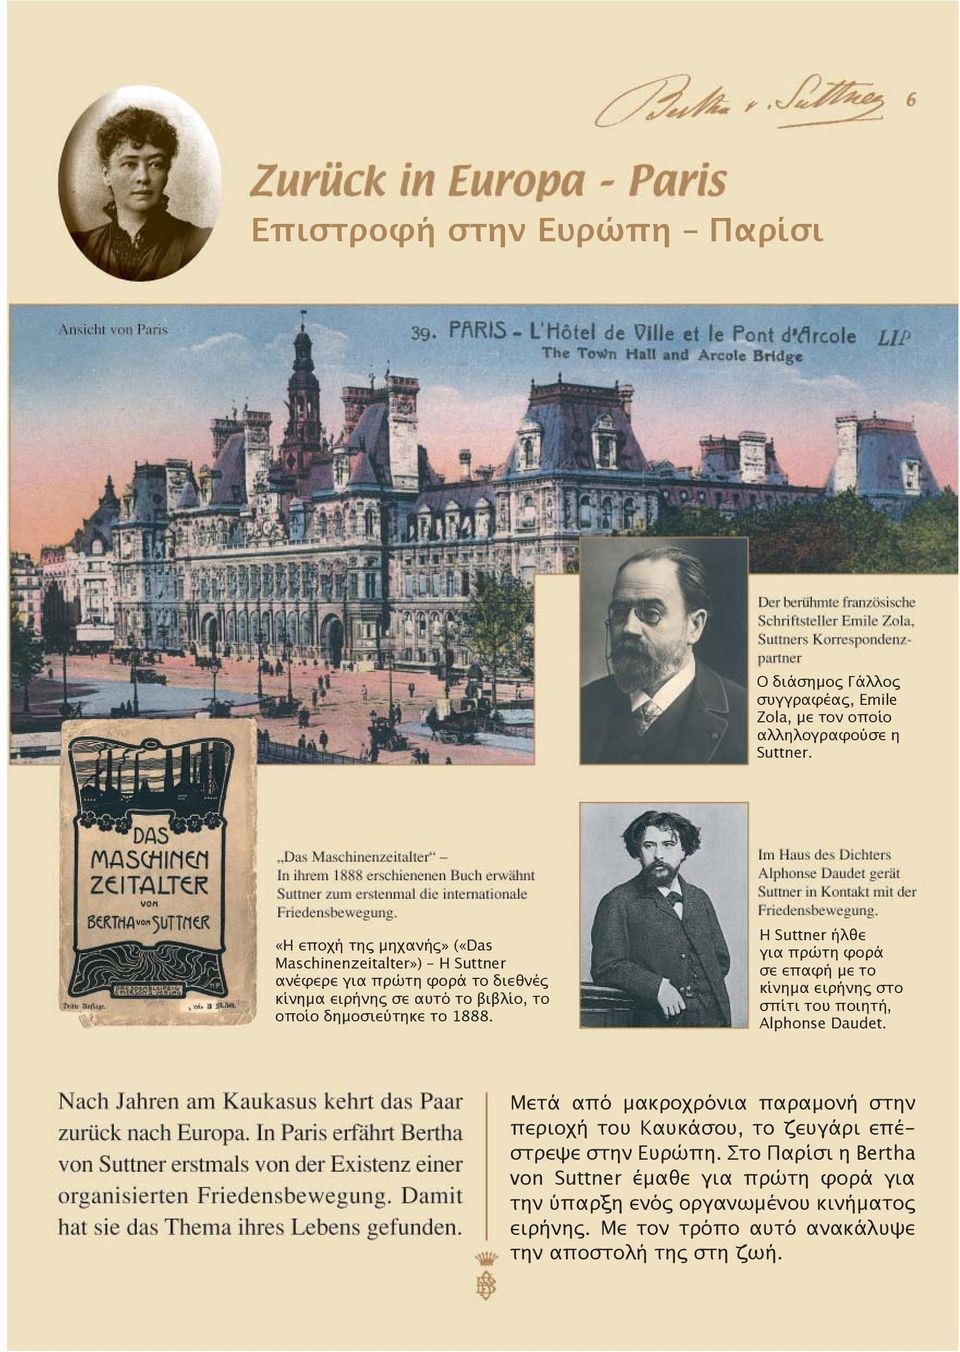 1888. Η Suttner ήλθε για πρώτη φορά σε επαφή με το κίνημα ειρήνης στο σπίτι του ποιητή, Alphonse Daudet.